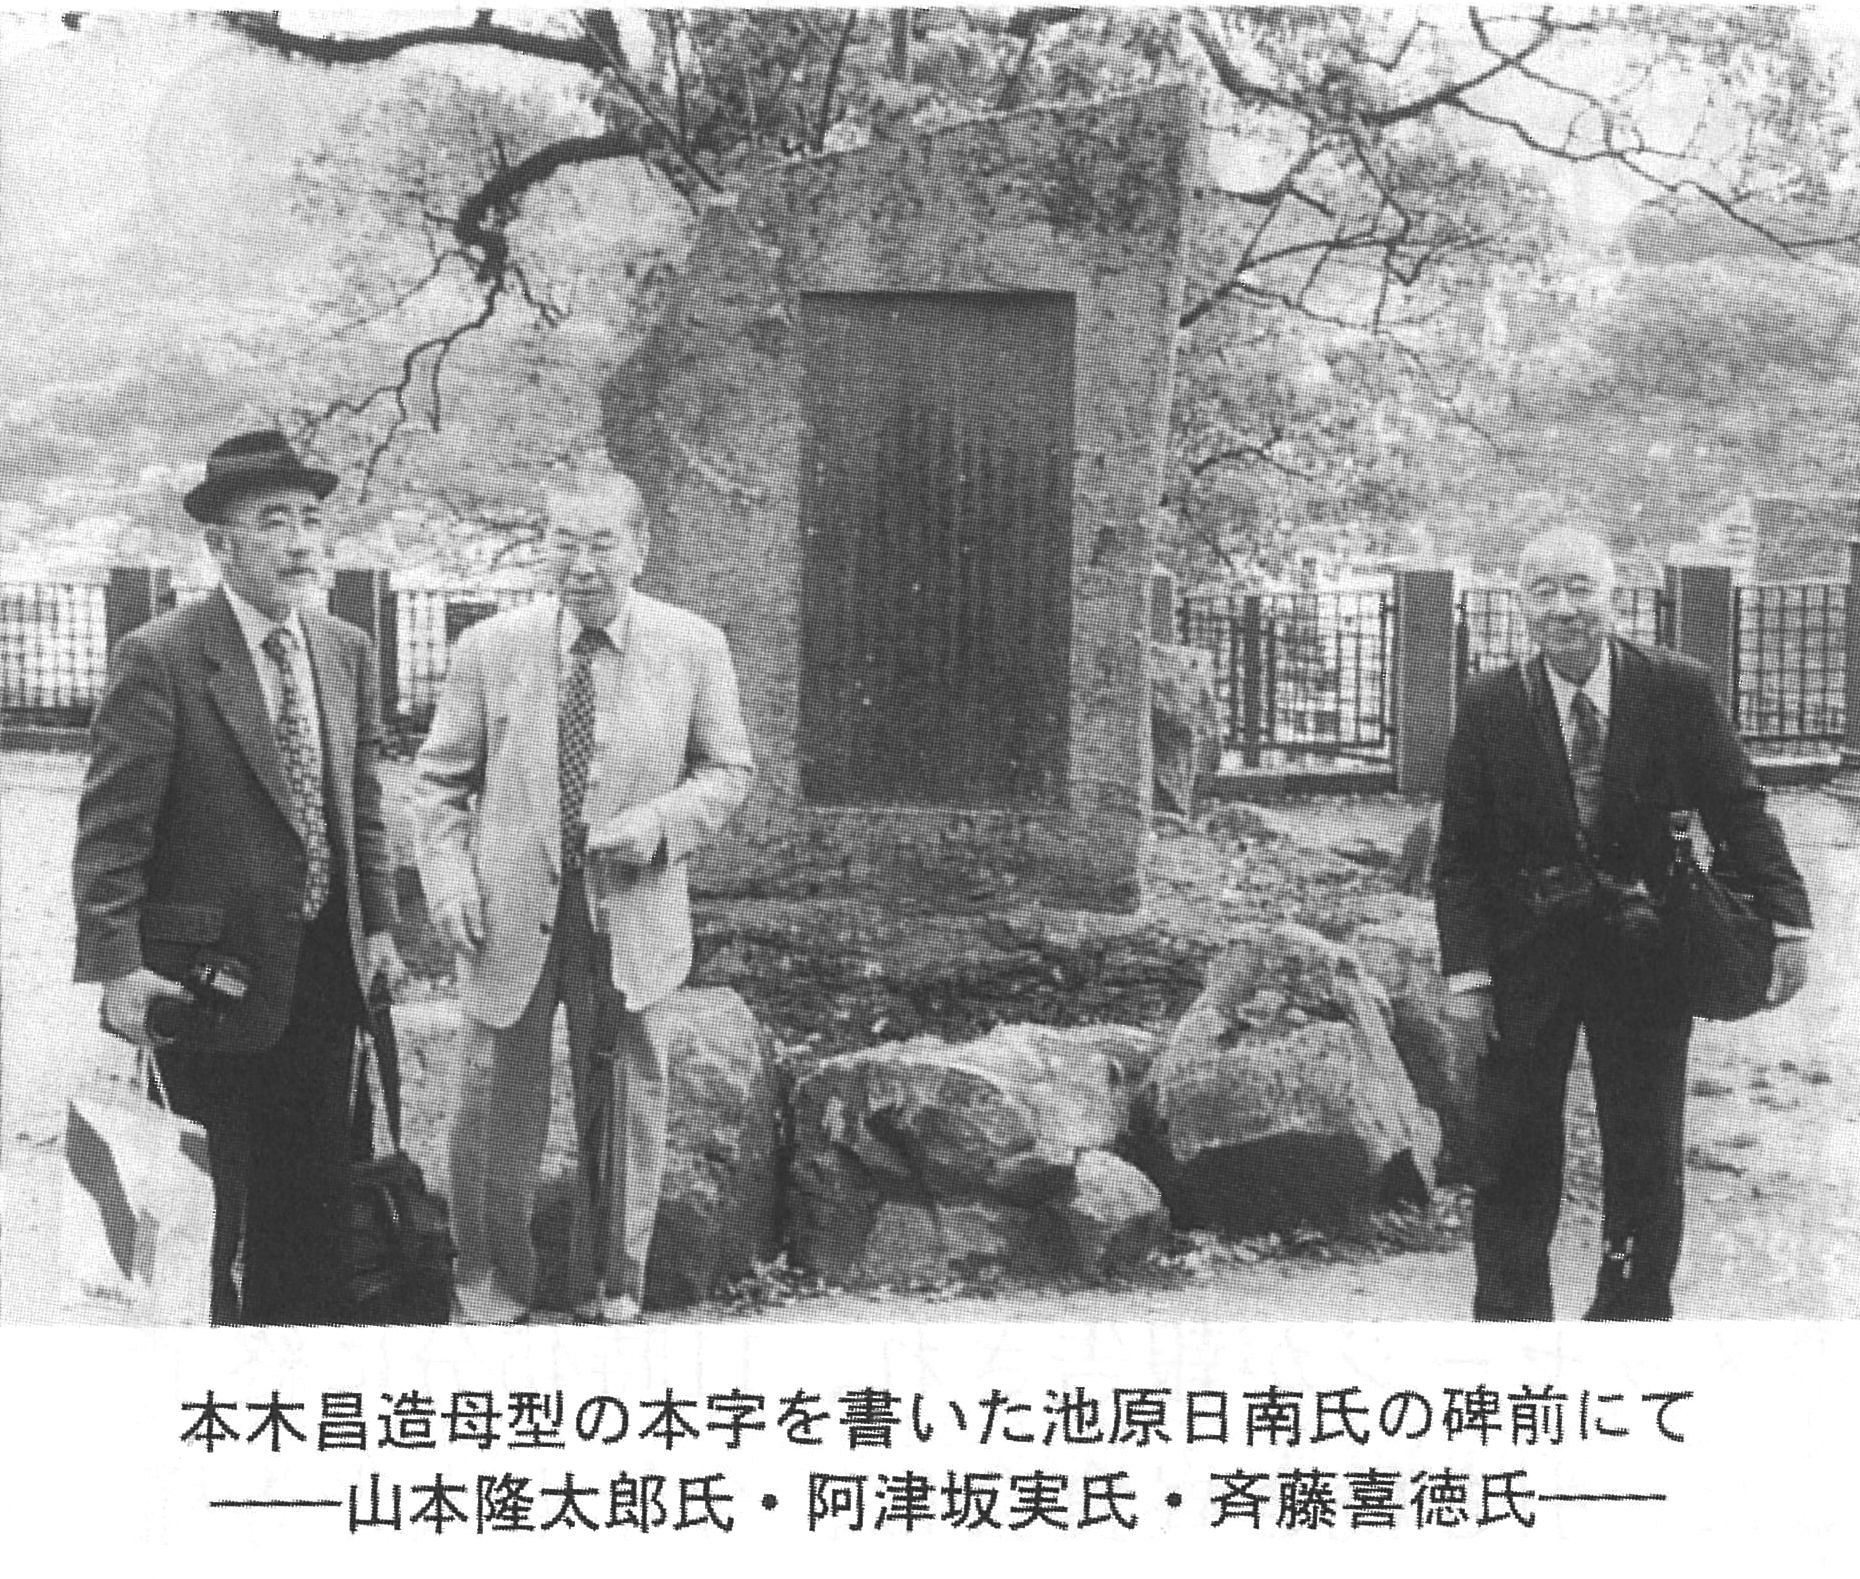 池原香穉碑の前で　山本隆太郎・阿津坂実・斉藤喜徳の各氏